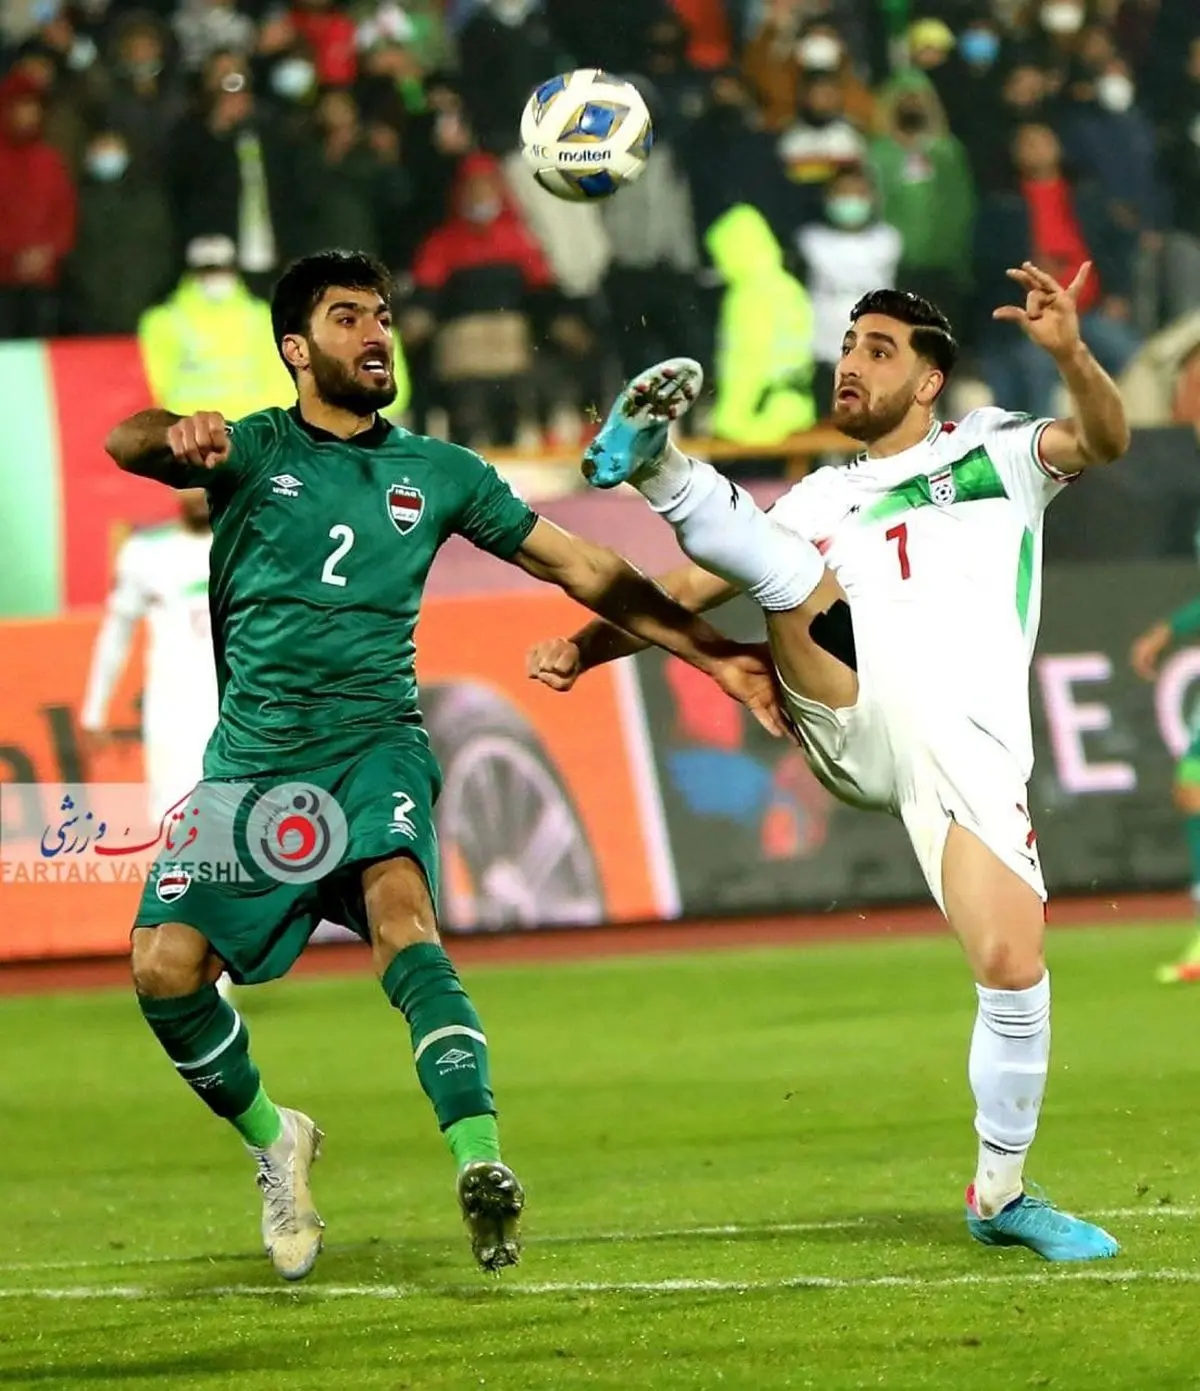 آخرین وضعیت مصدومیت کاپیتان ایران/ جهانبخش به جام جهانی می رسد؟
